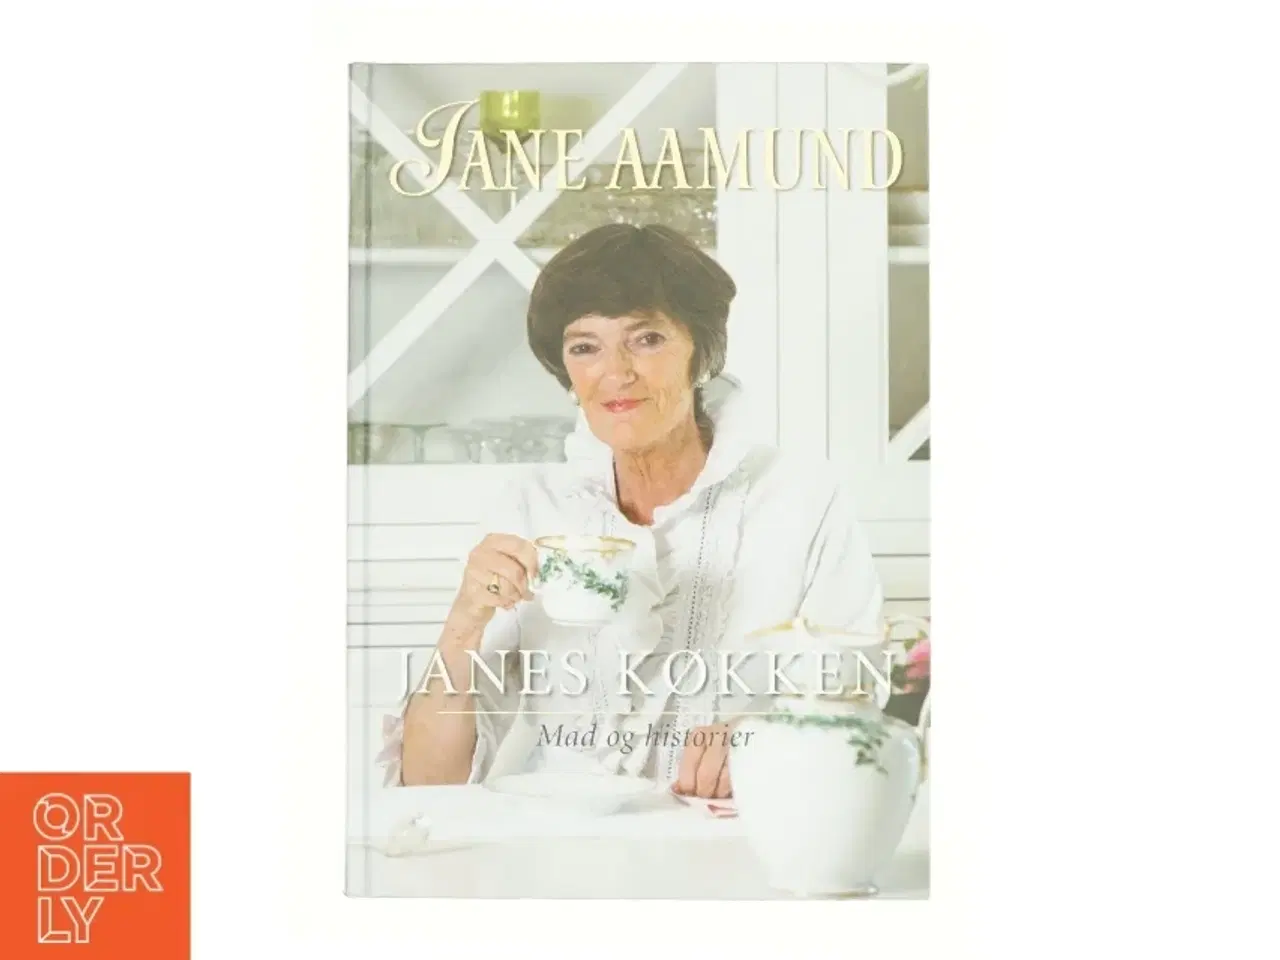 Billede 1 - Janes køkken : mad og historier af Jane Aamund (Bog)